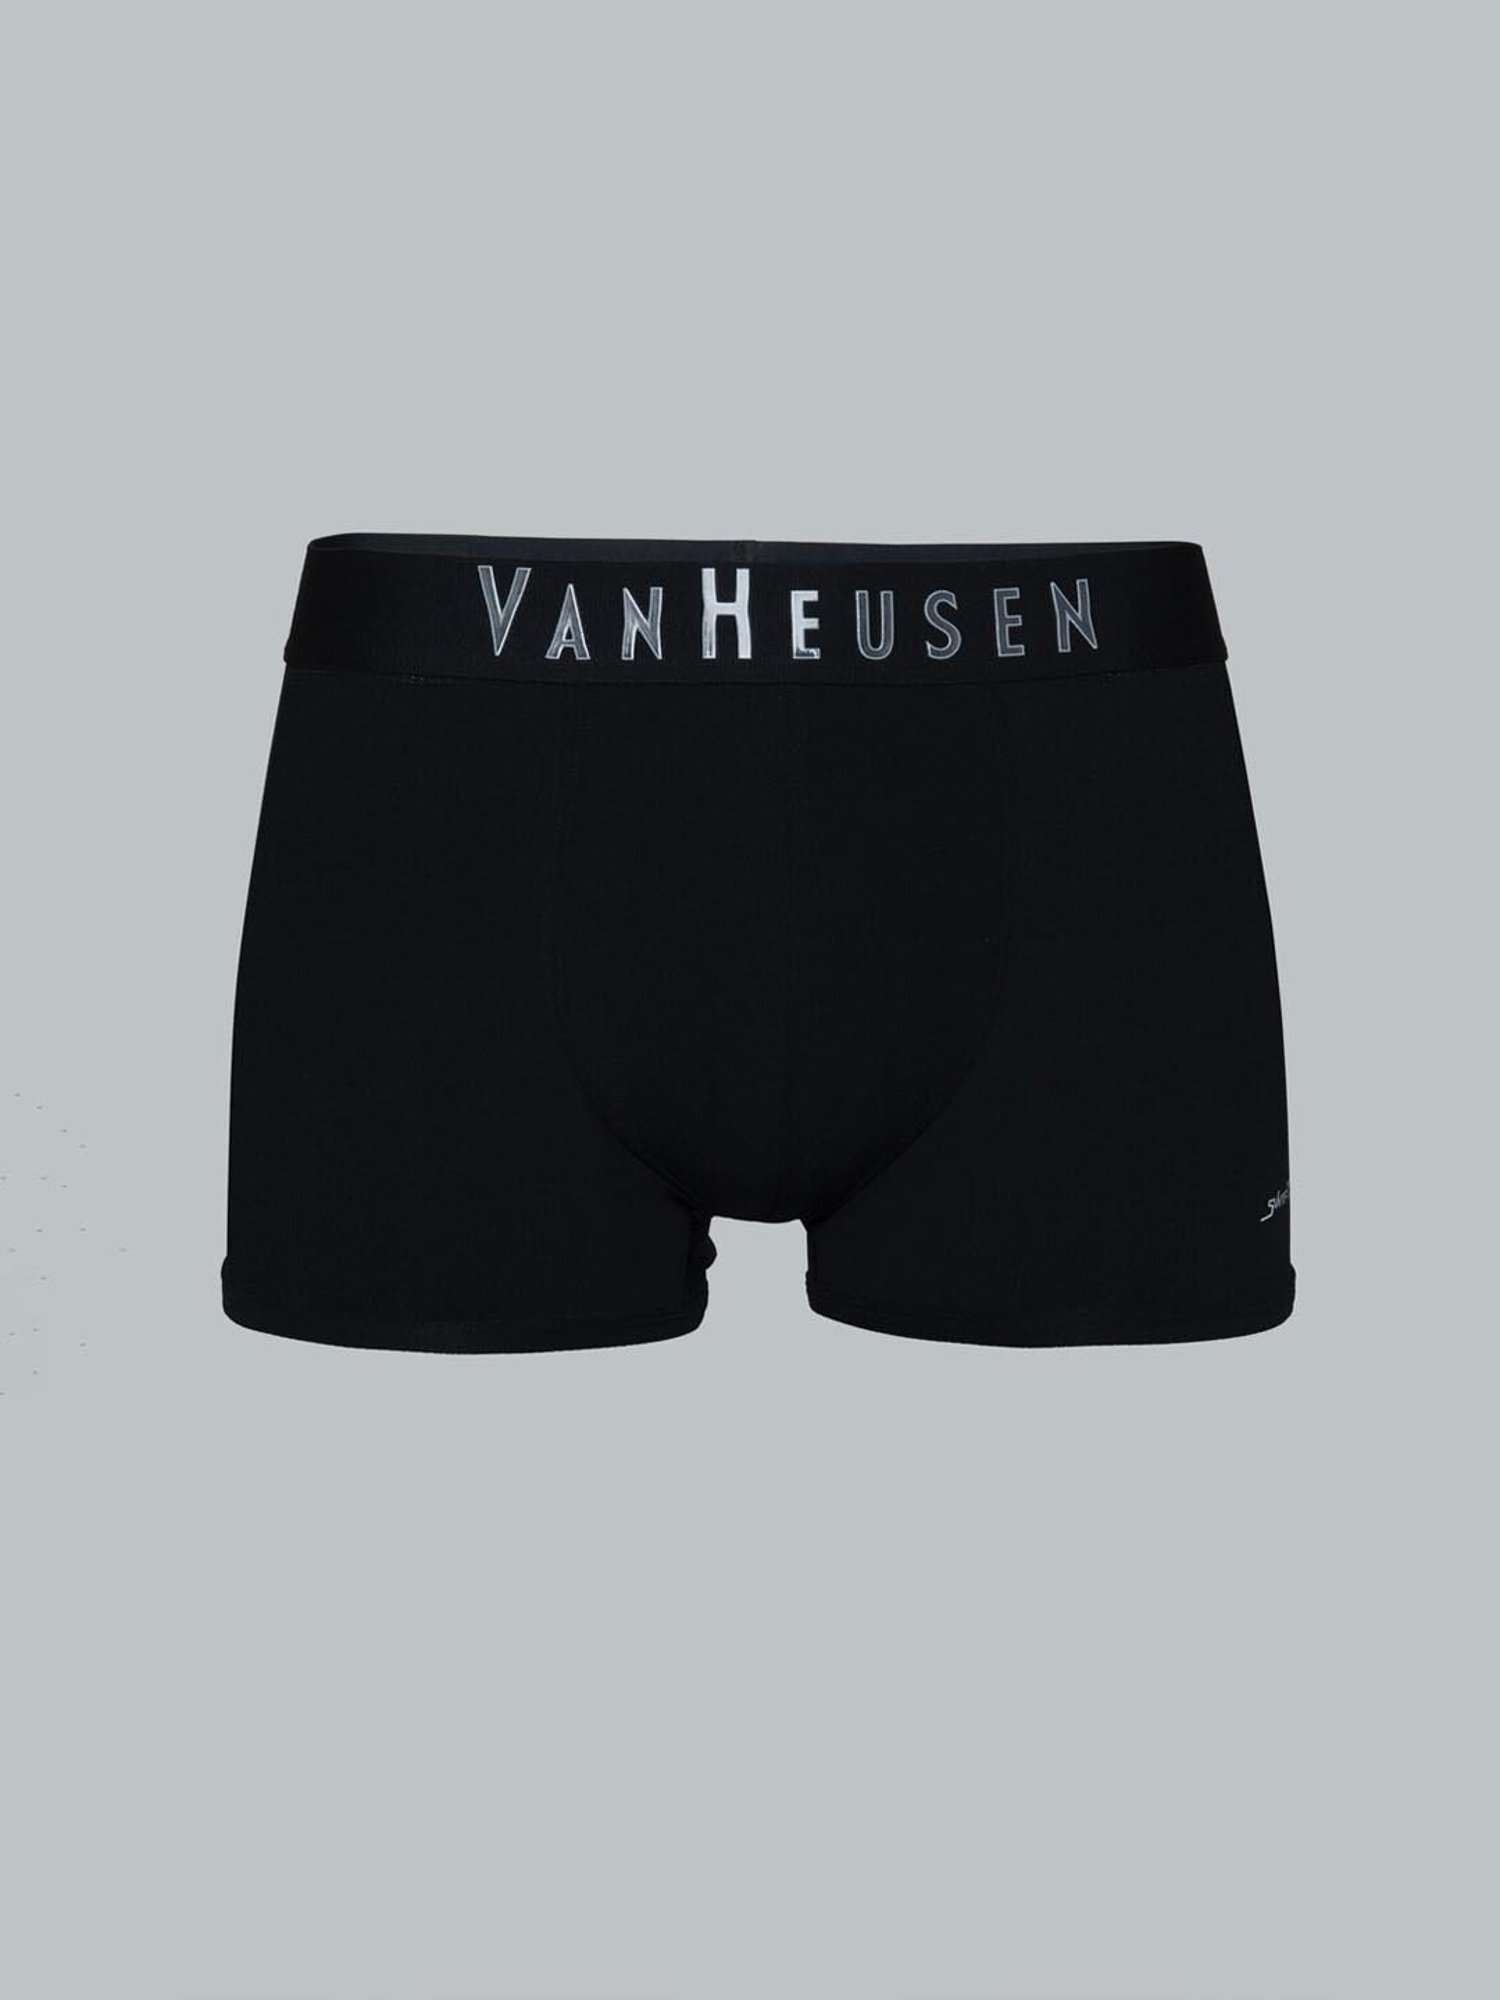 Van Heusen Black Brief IHBR1SXD30001, Size(cm): XL at Rs 379/piece